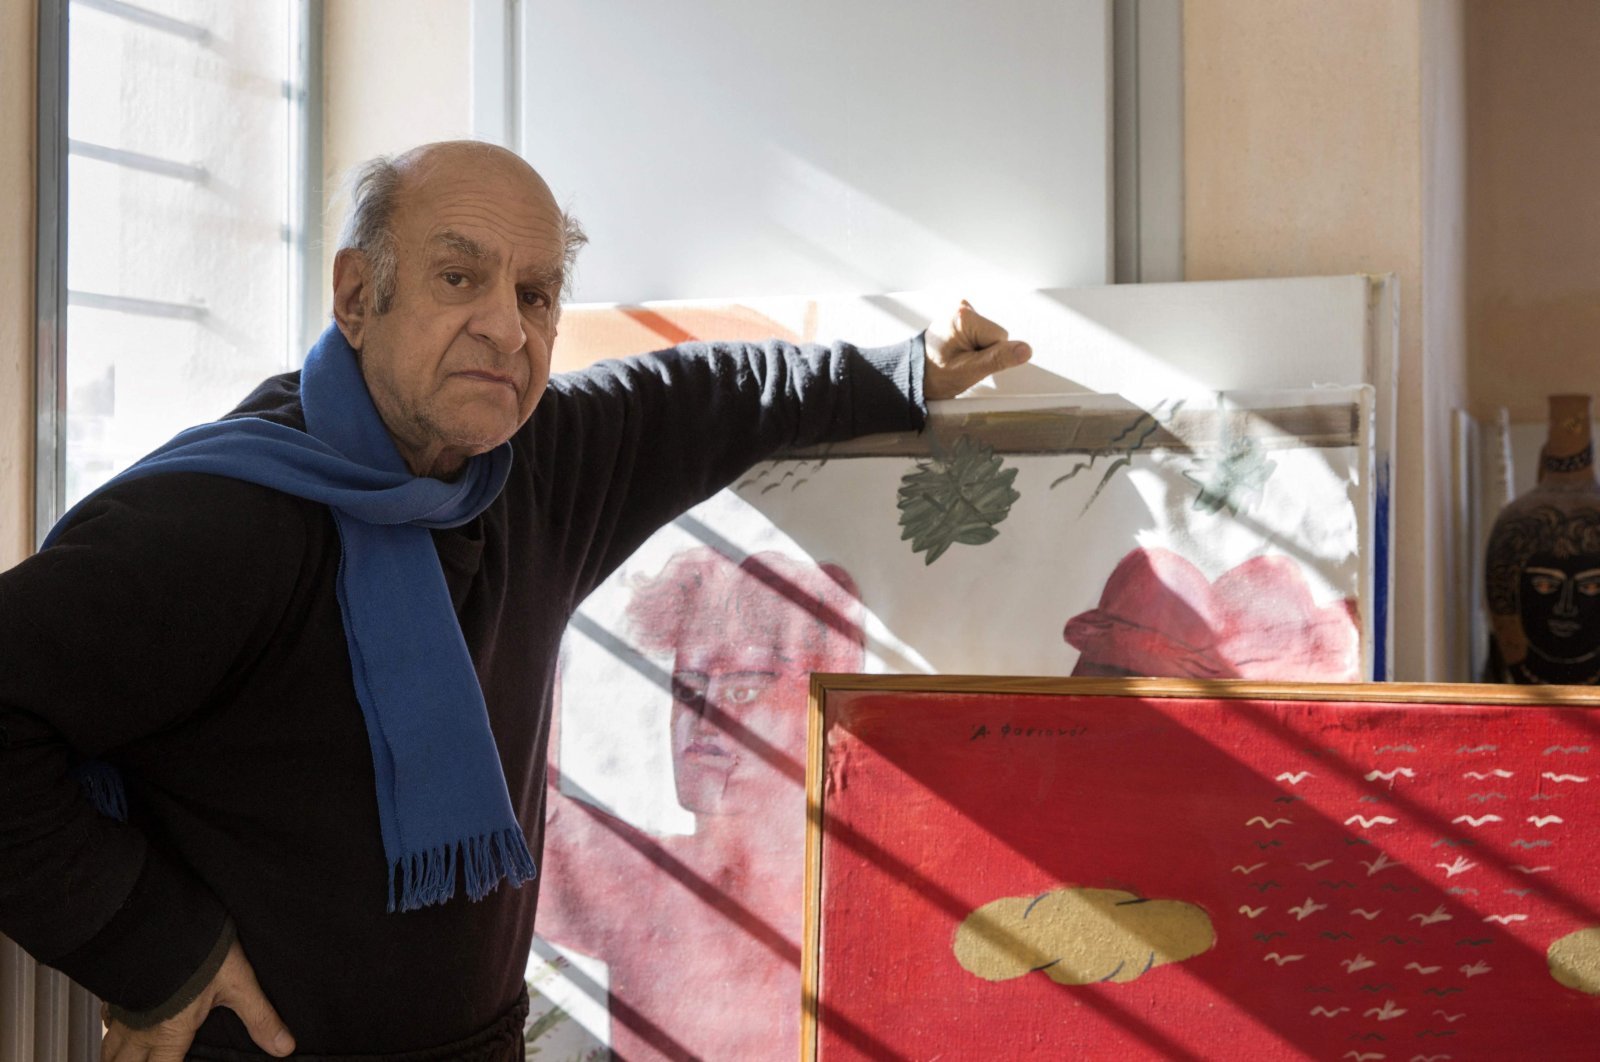 Alekos Fassianos, ‘Picasso of Greece,’ meninggal pada usia 86